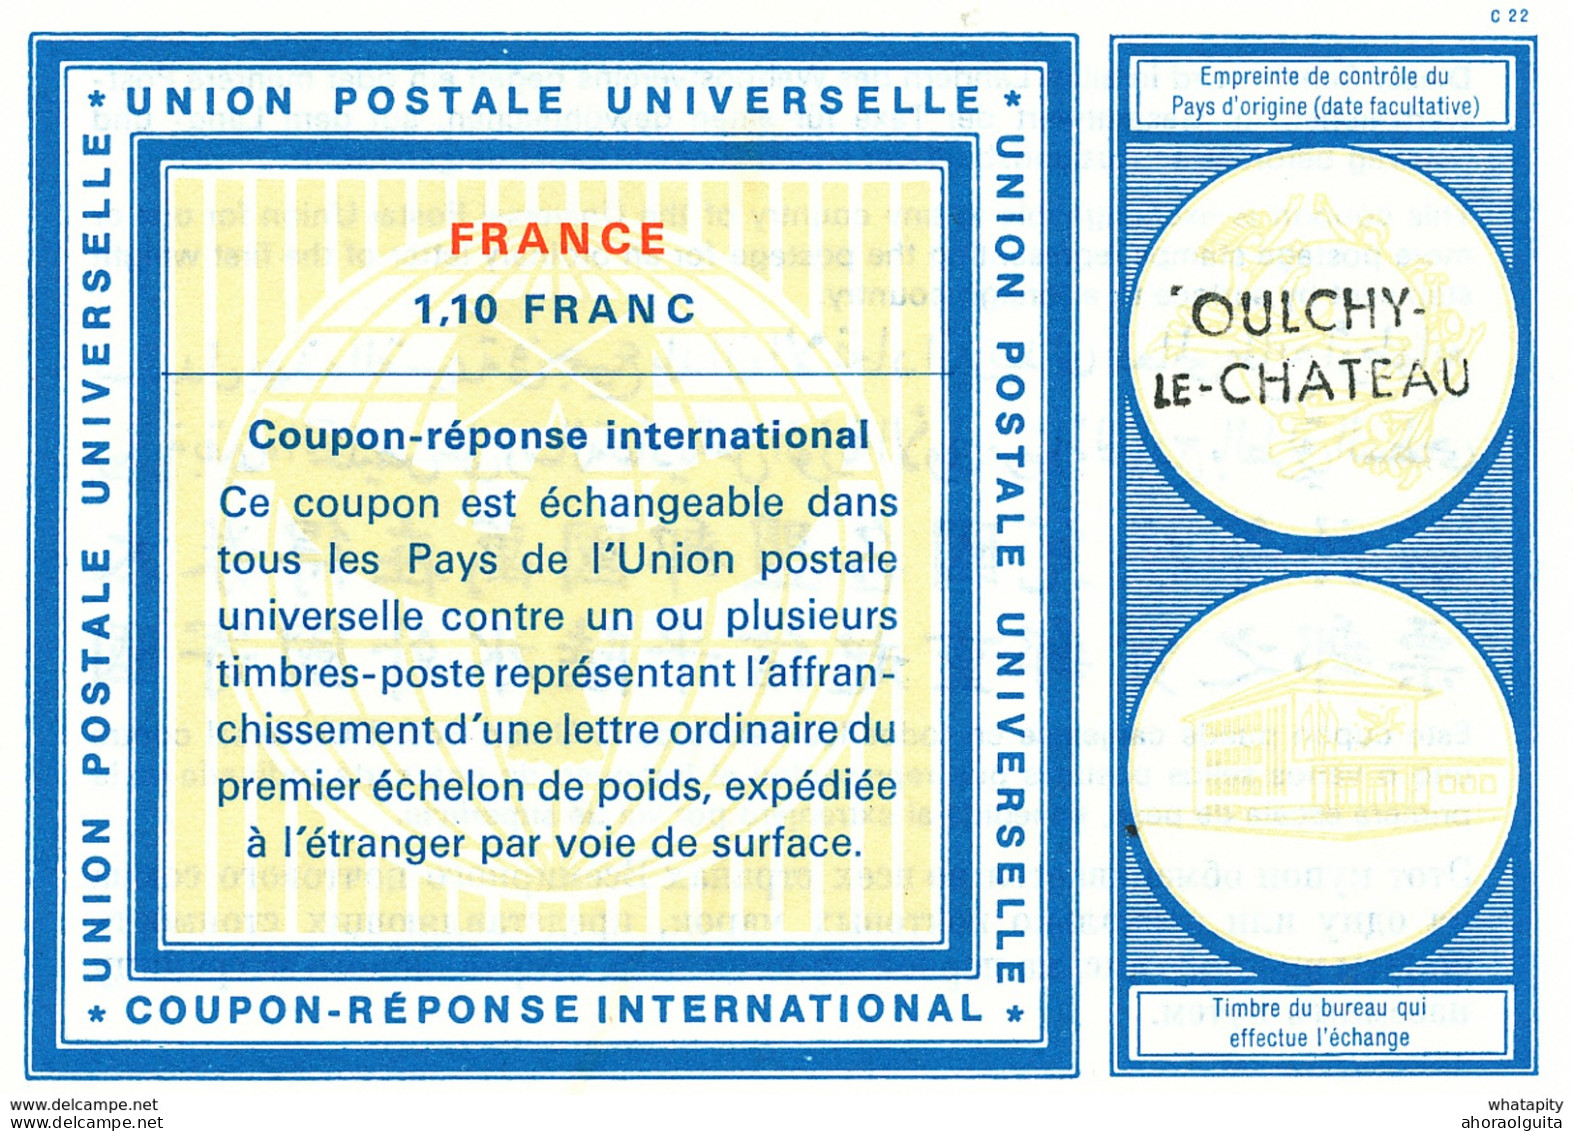 DT 388 -- FRANCE Coupon Réponse International ( IRC) 1.10 Francs  - Griffe OULCHY LE CHATEAU - Coupons-réponse